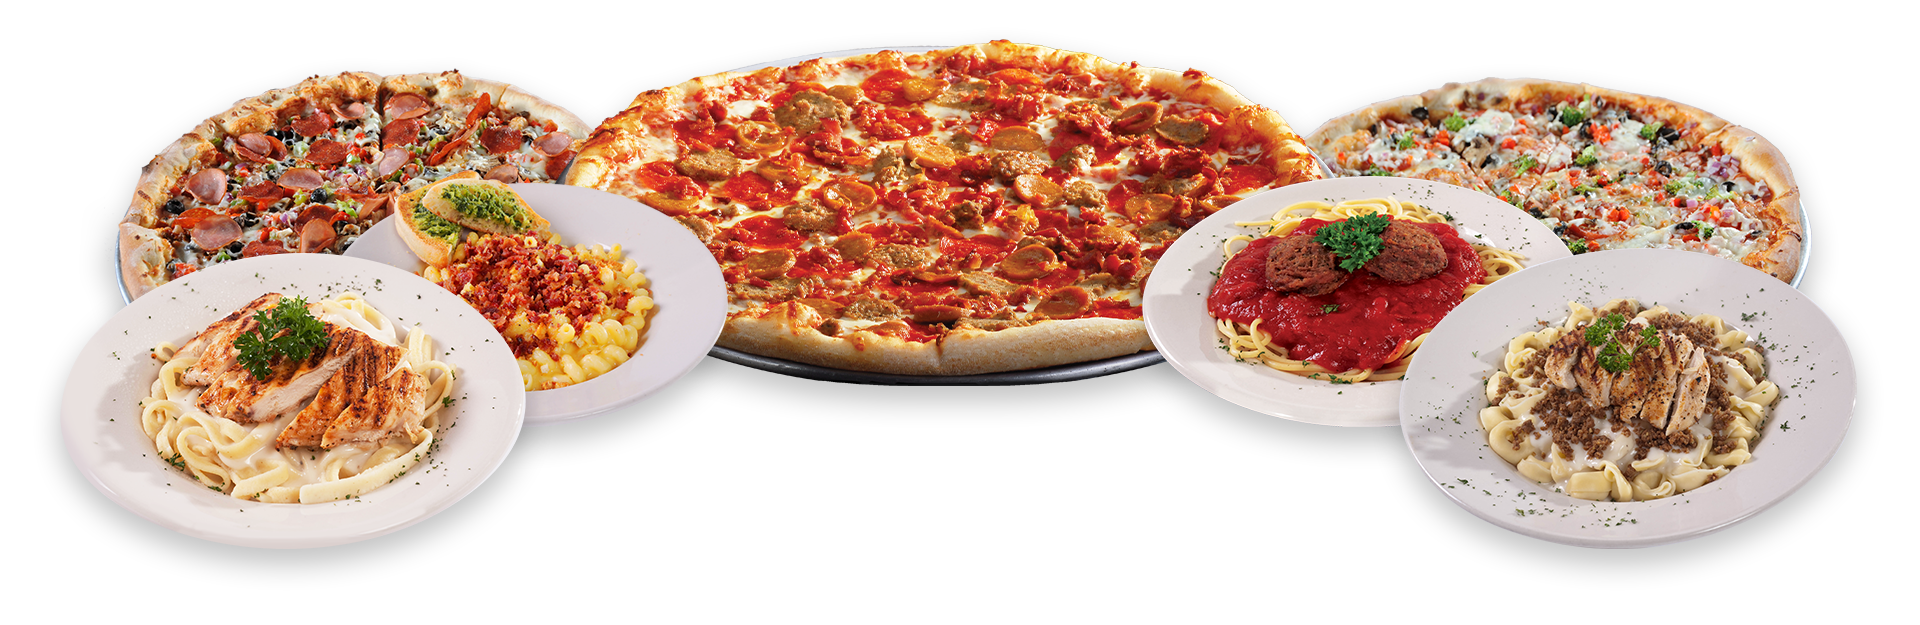 Italian Food | Pizza | Catering | Italian Restaurant Franchises | Sam & Louie's NY Pizza